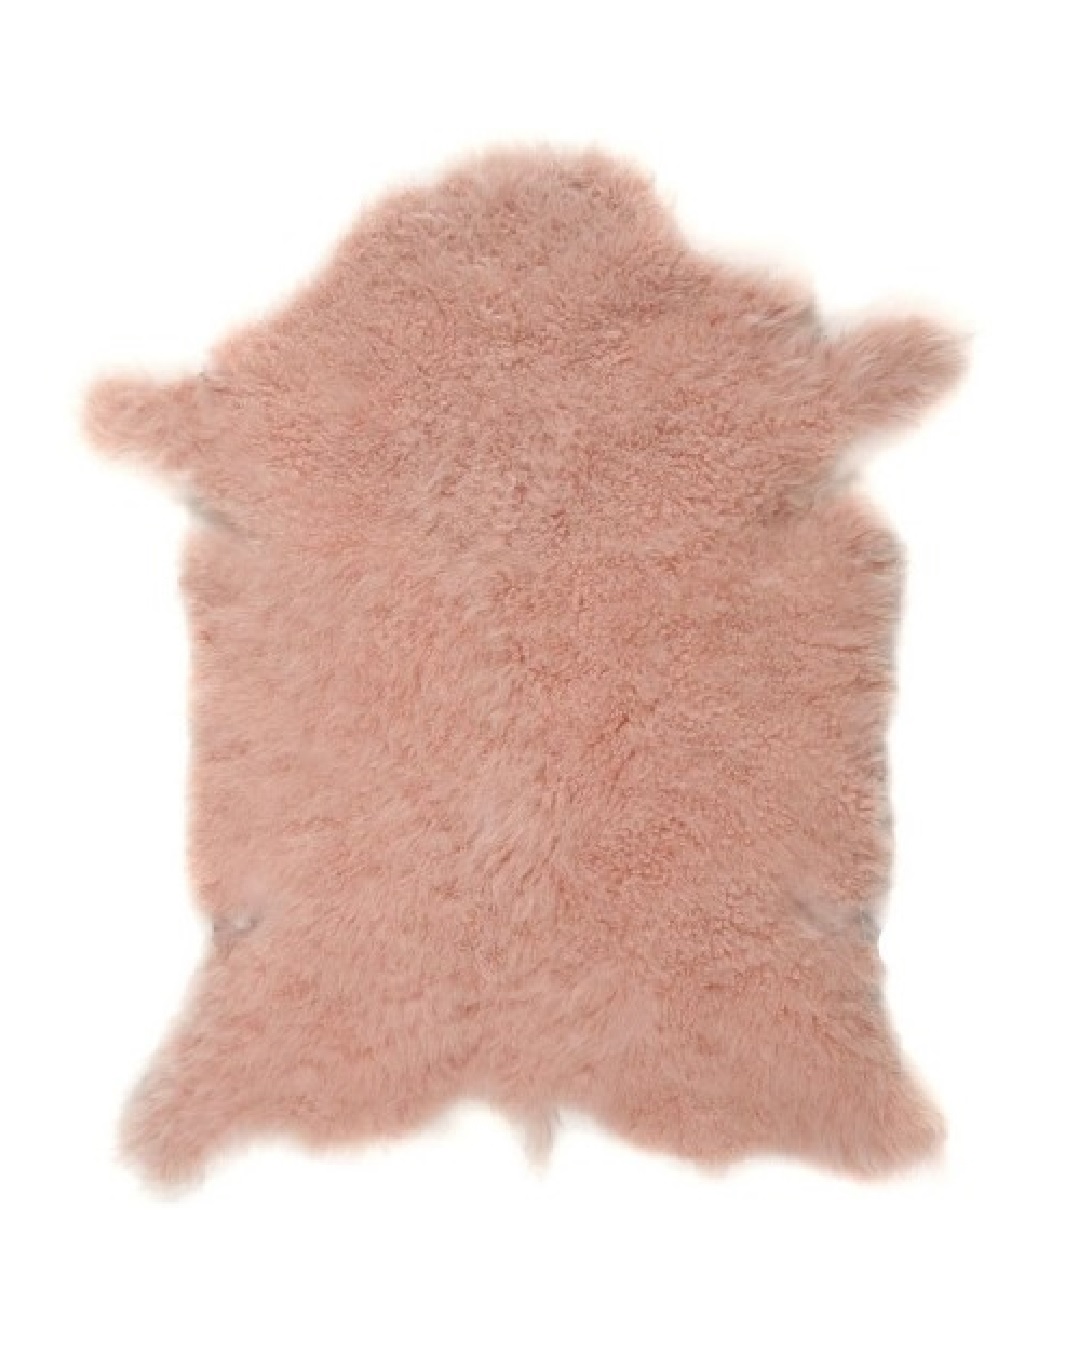 Pink cashmere rug